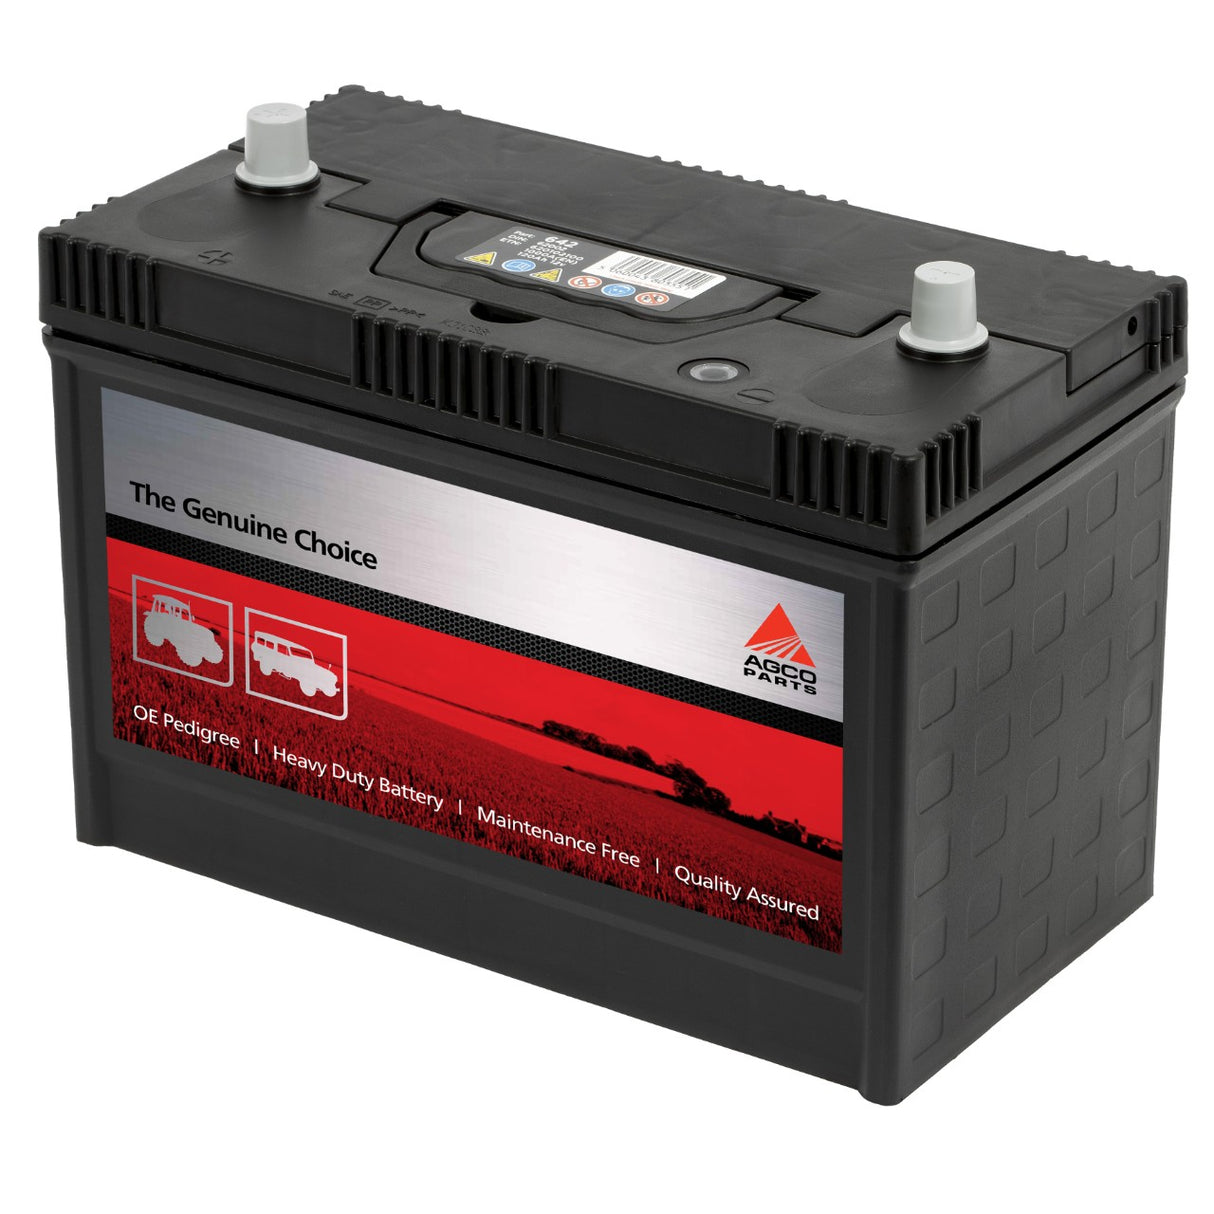 AGCO | AGCO Parts Battery - 3933353M1 - Farming Parts